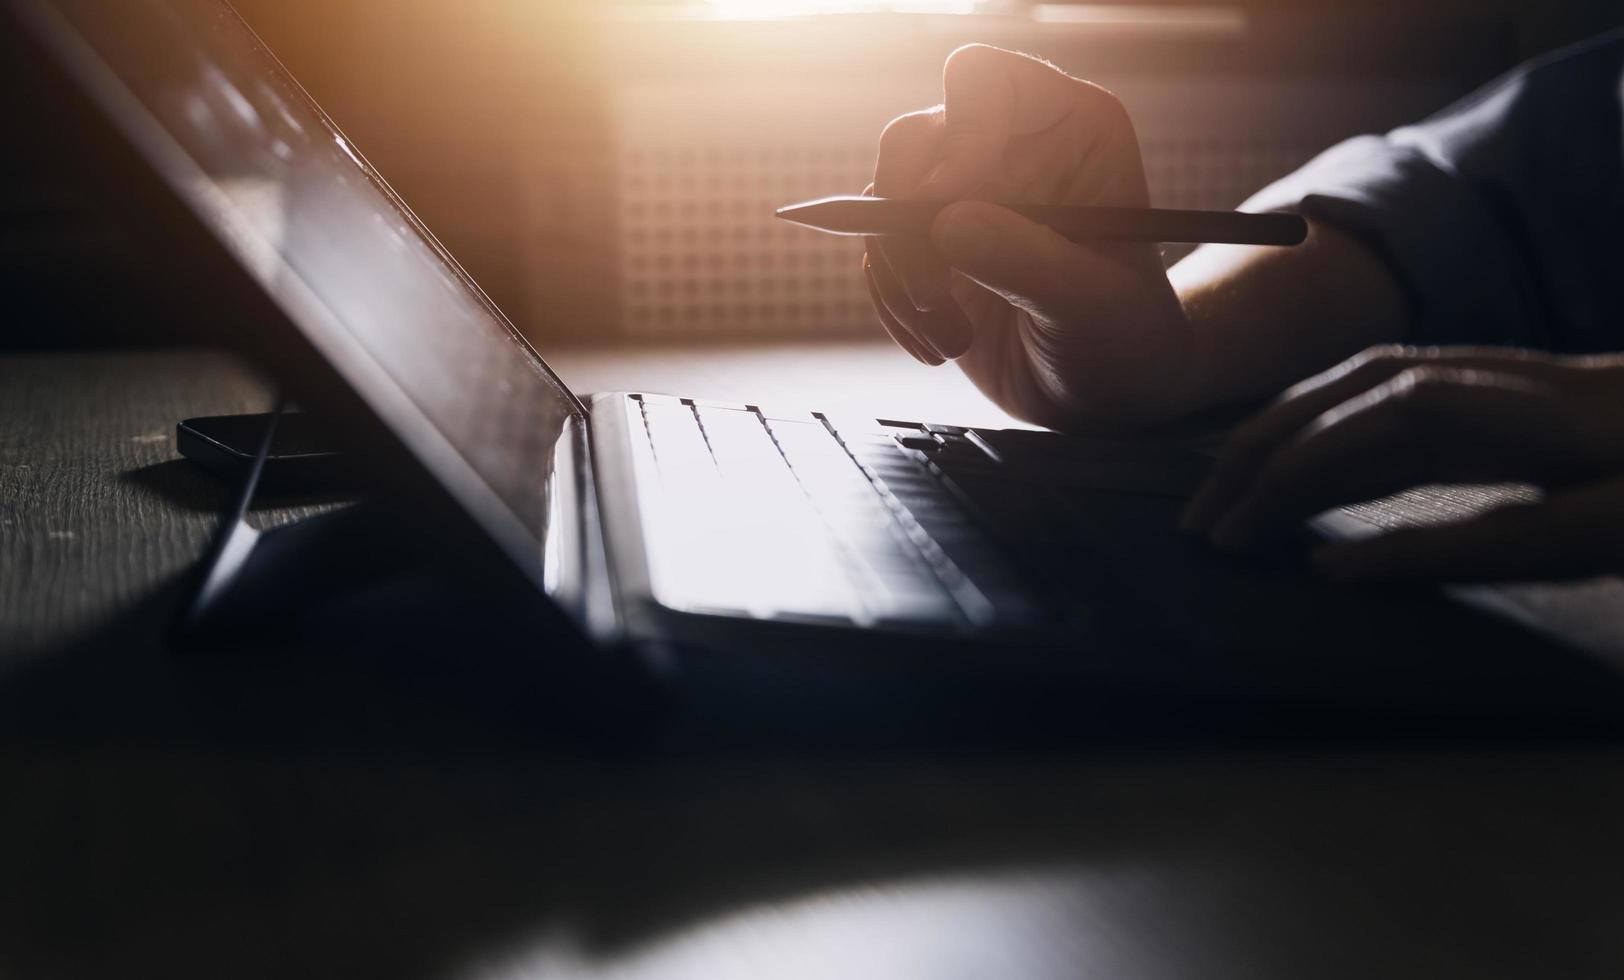 main de femme d'affaires travaillant avec un ordinateur portable, une tablette et un téléphone intelligent dans un bureau moderne avec un diagramme d'icône virtuelle au bureau moderne à la lumière du matin photo